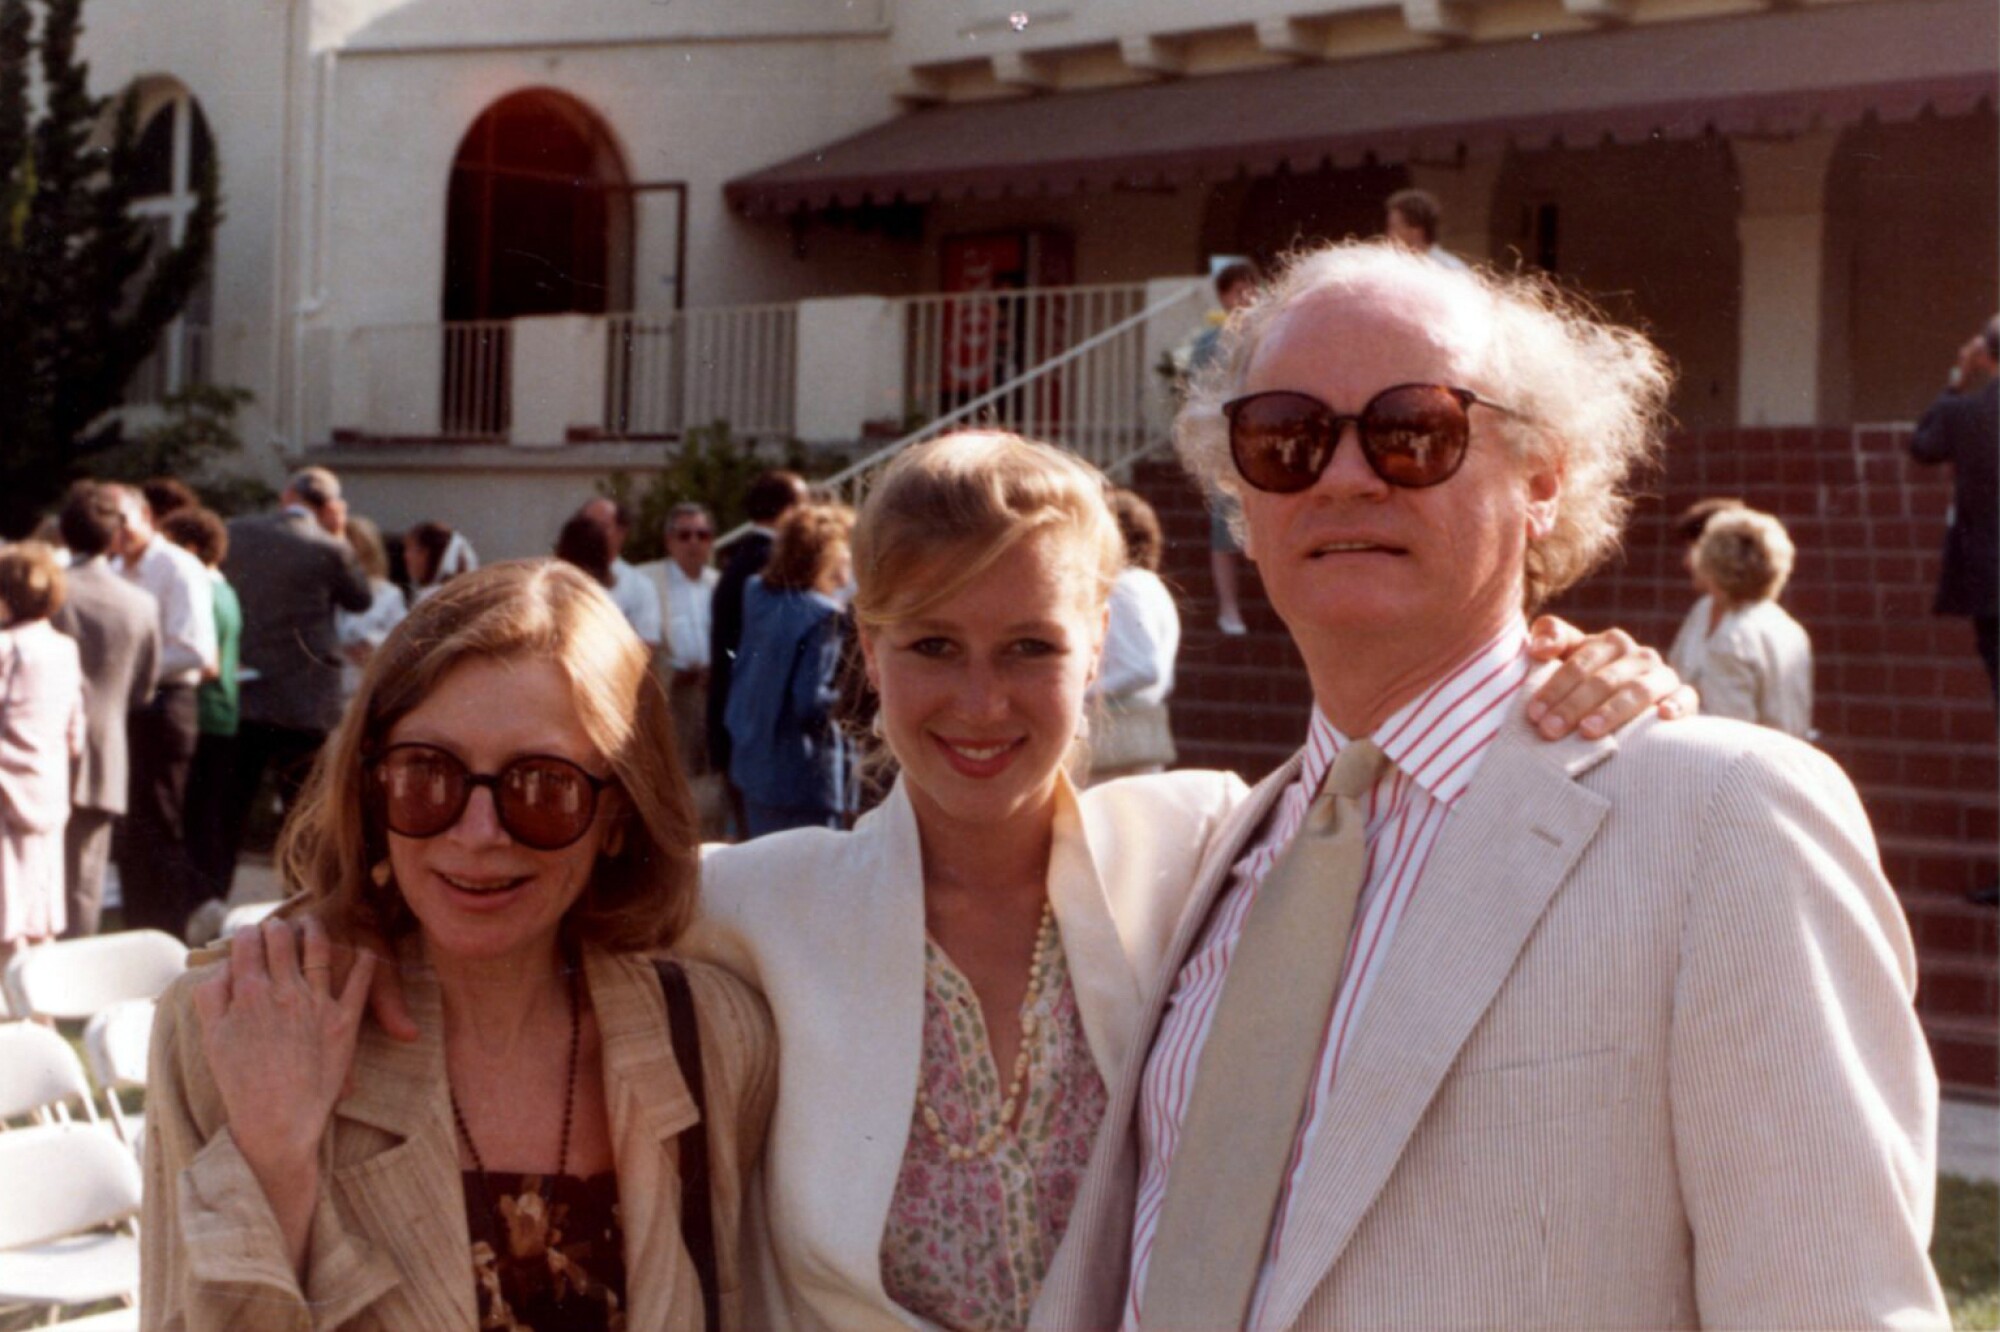 جوآن دیدیون و جان گریگوری دان به همراه دخترشان کوئینتانا در سال 1984.